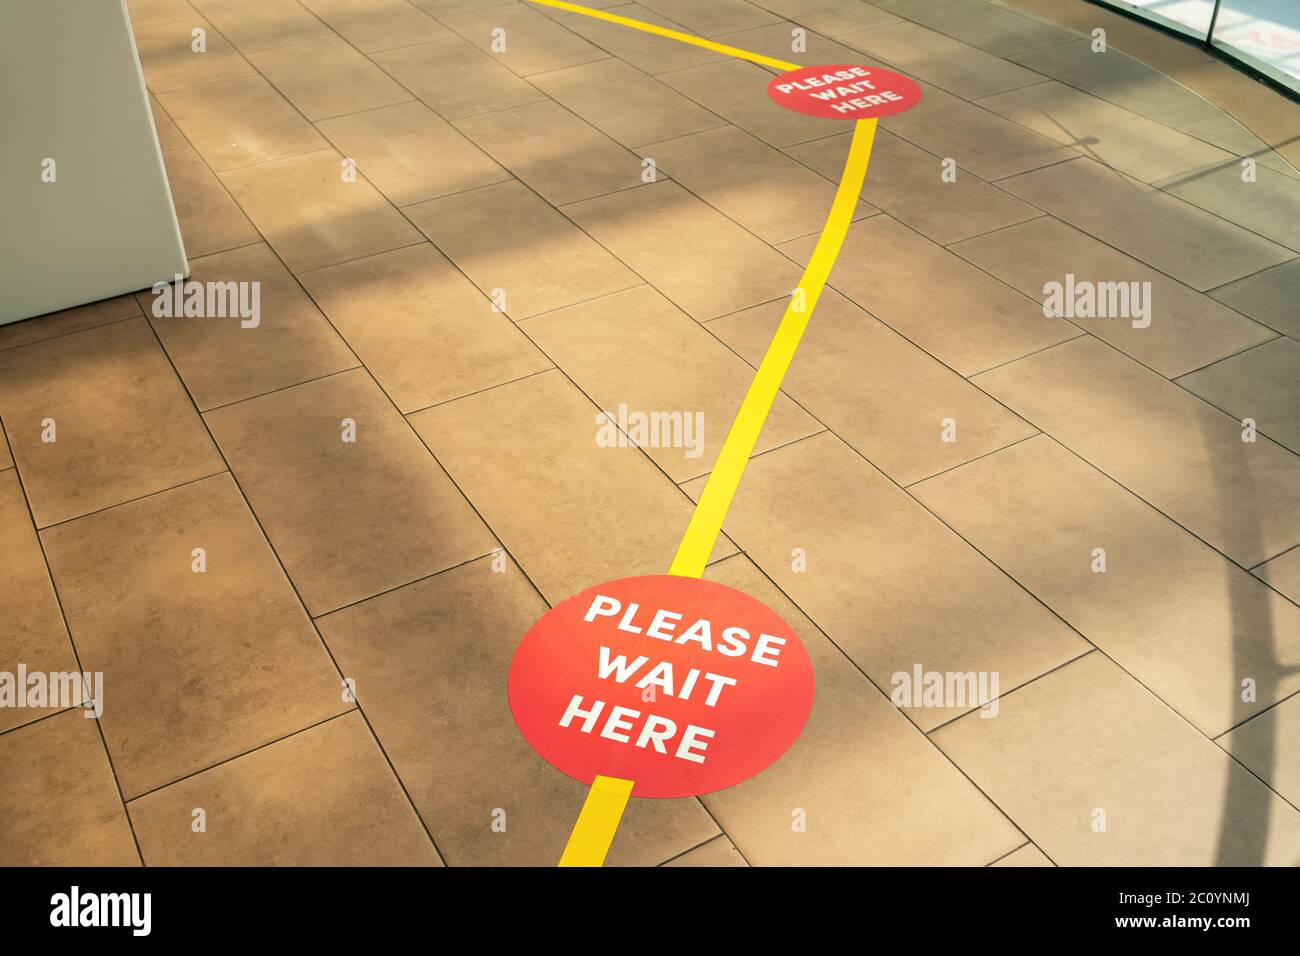 Línea de Compras a distancia Social. Asegure las líneas de cinta amarilla en el suelo para esperar en la tienda. Espere aquí, por favor. Foto de stock